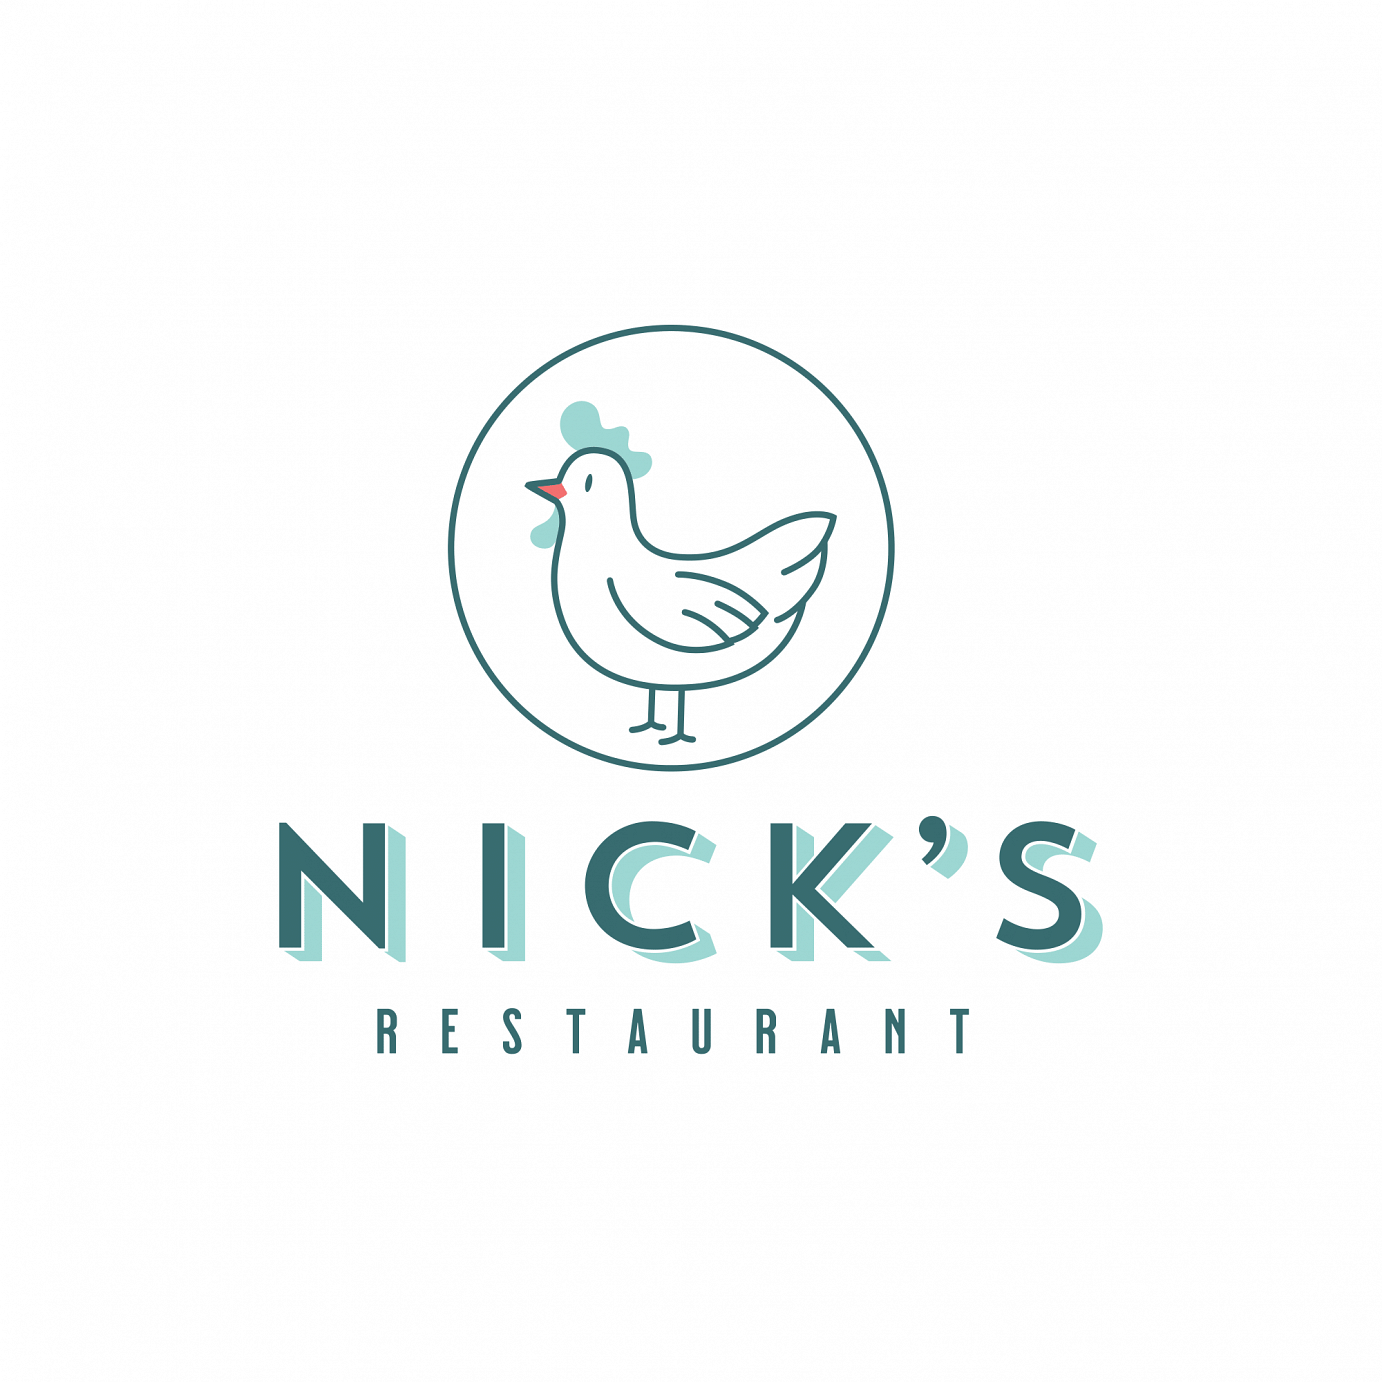 Nick's Restaurant logo top